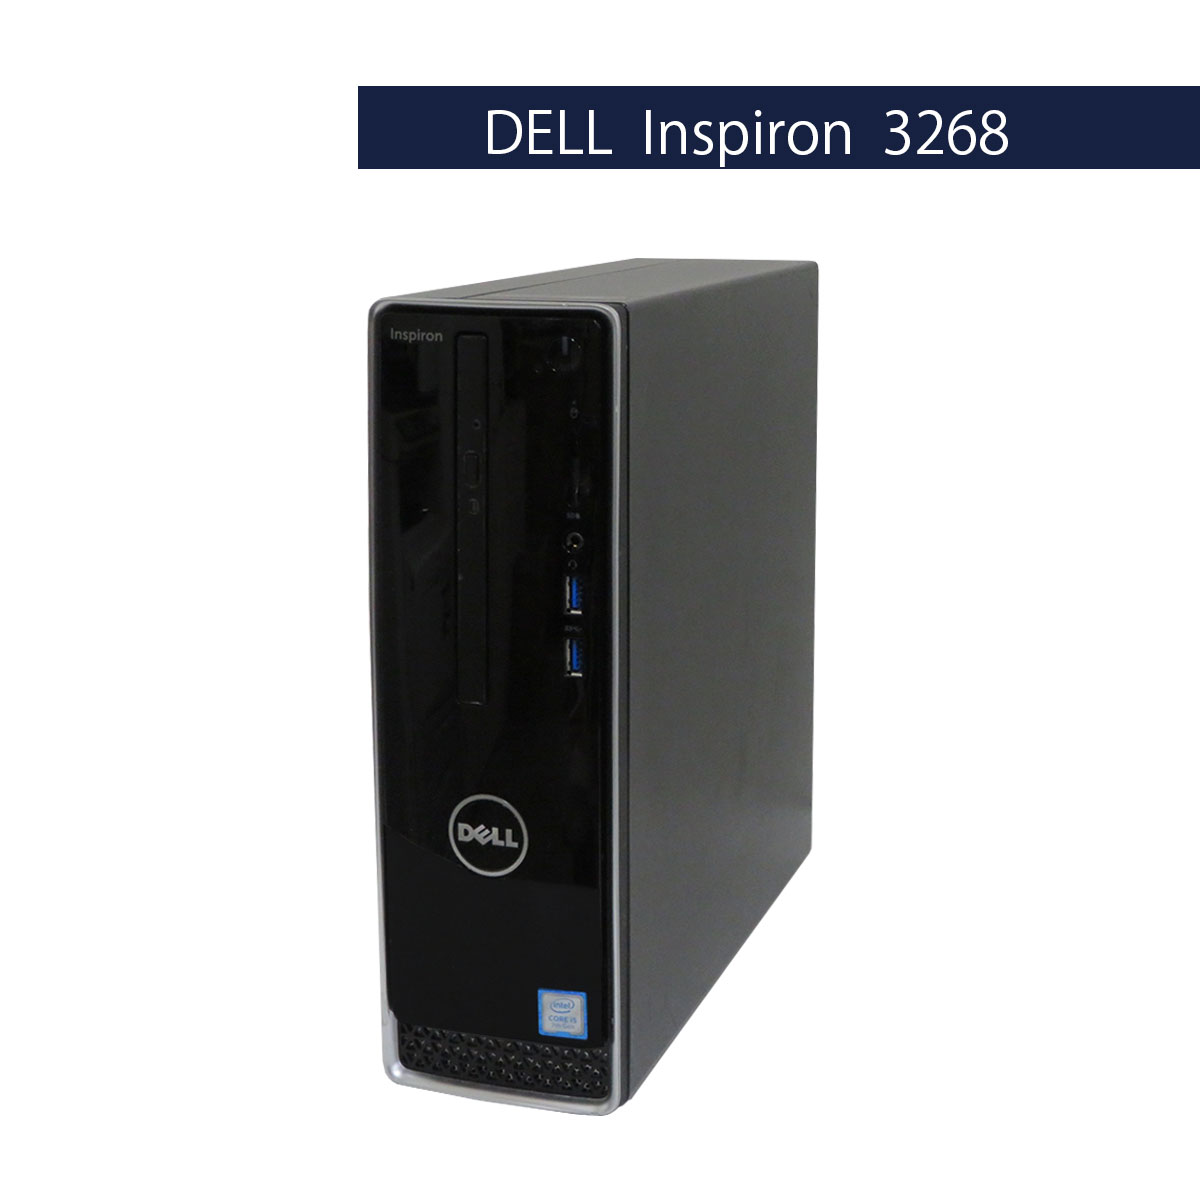 DELL Inspiron Desktop 3268